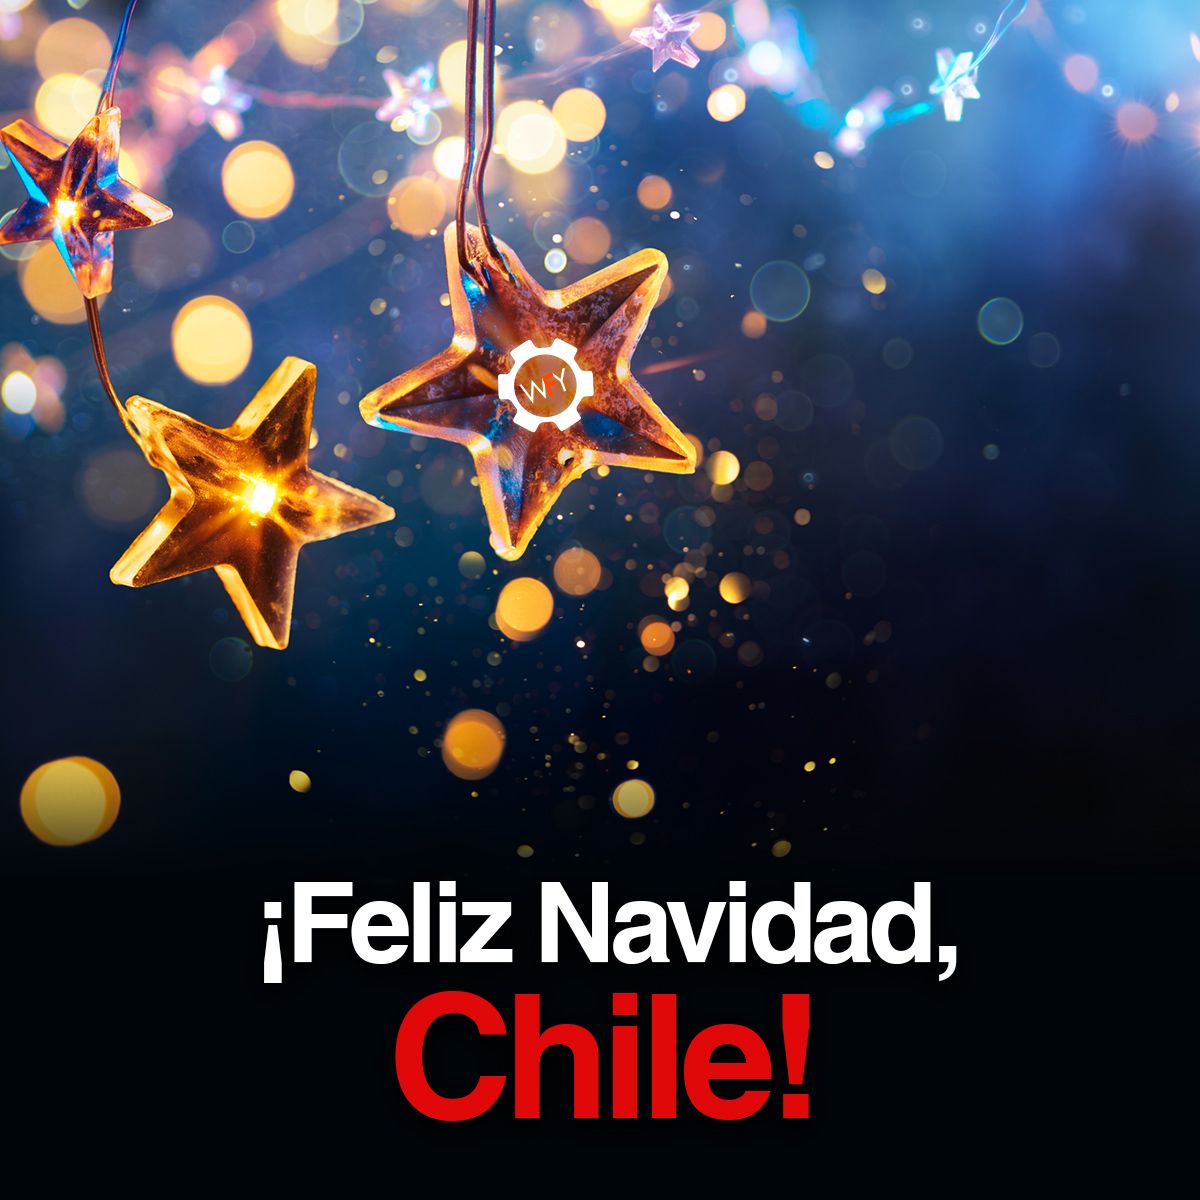 ¡Feliz Navidad, Chile!